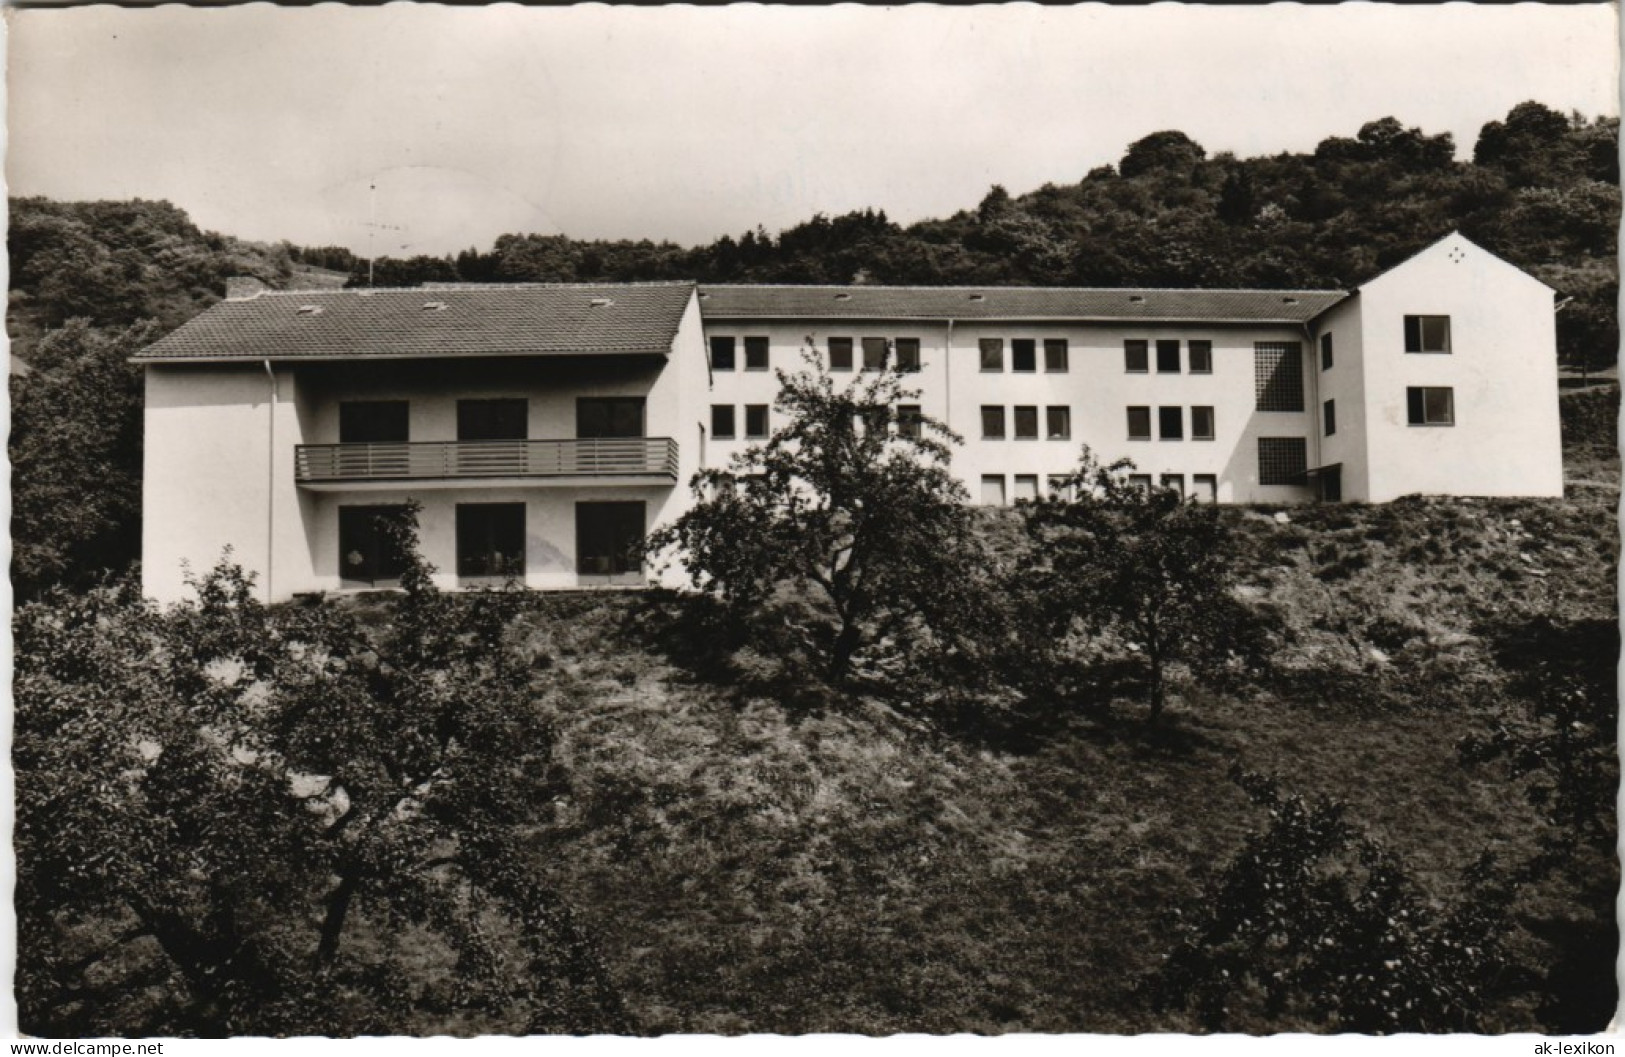 Ansichtskarte Nassau (Lahn) Schullandheim Der Düsseldorfer Realschule 1962 - Nassau